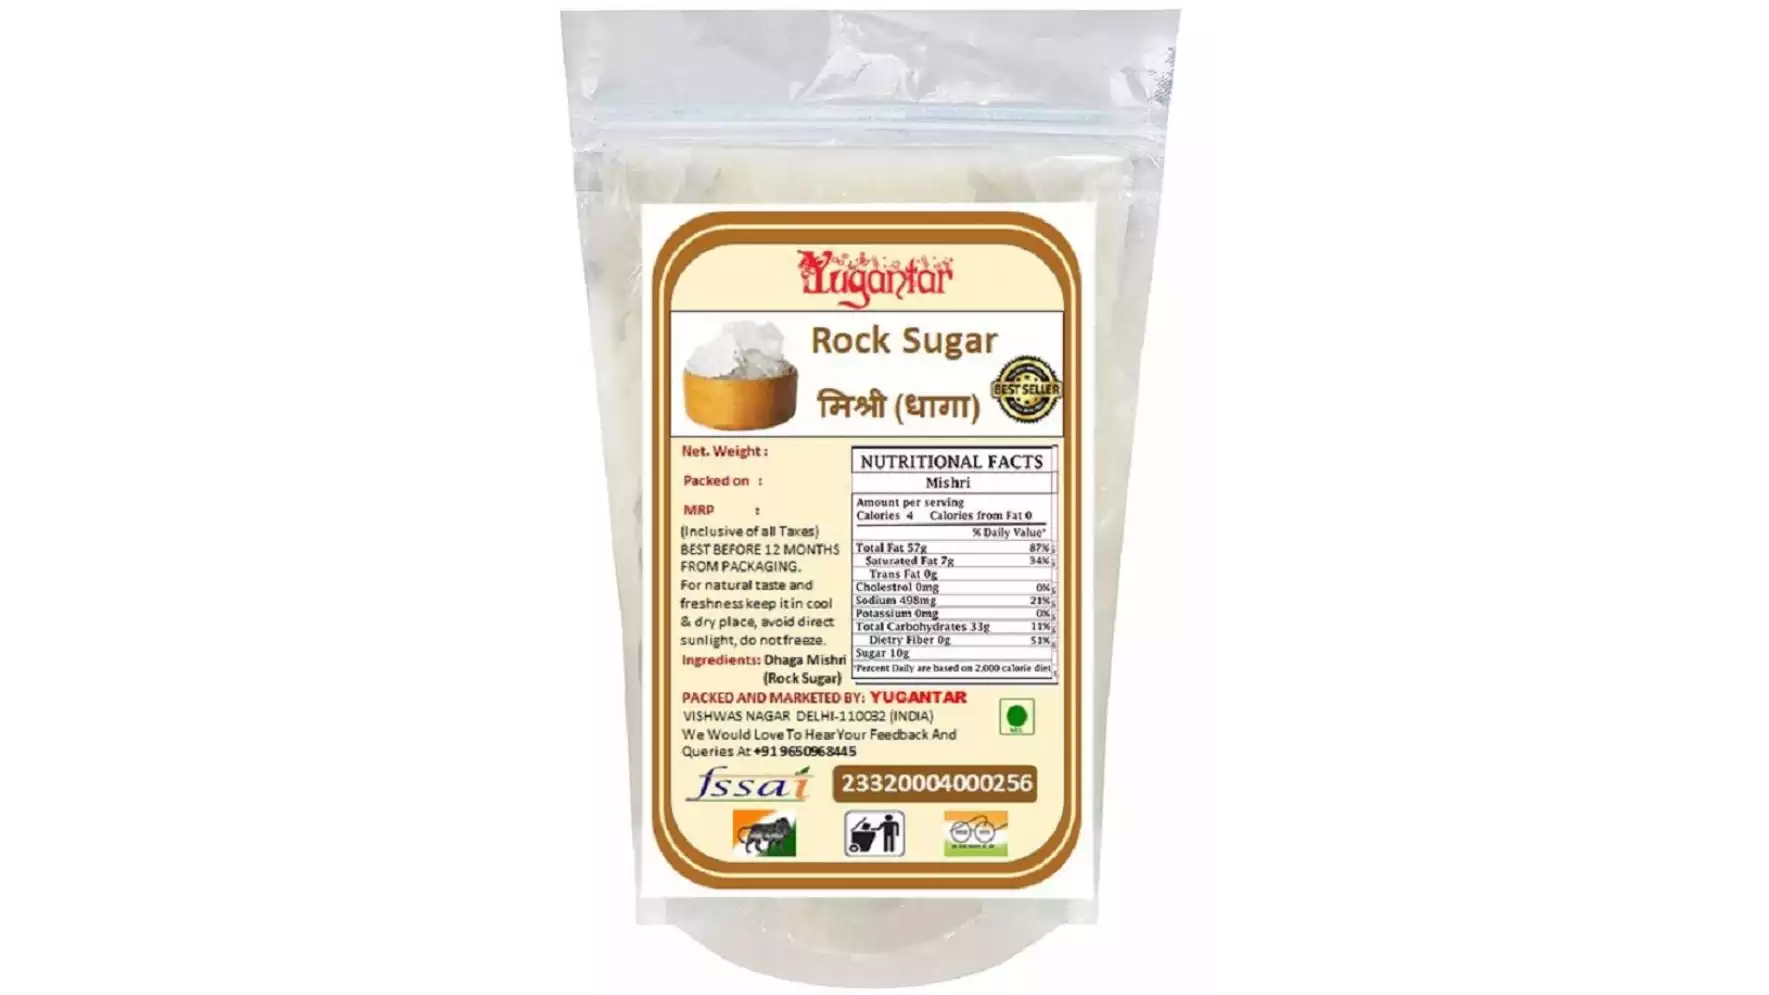 Yugantar Rock Sugar (Dhaga Mishri) (1000g)